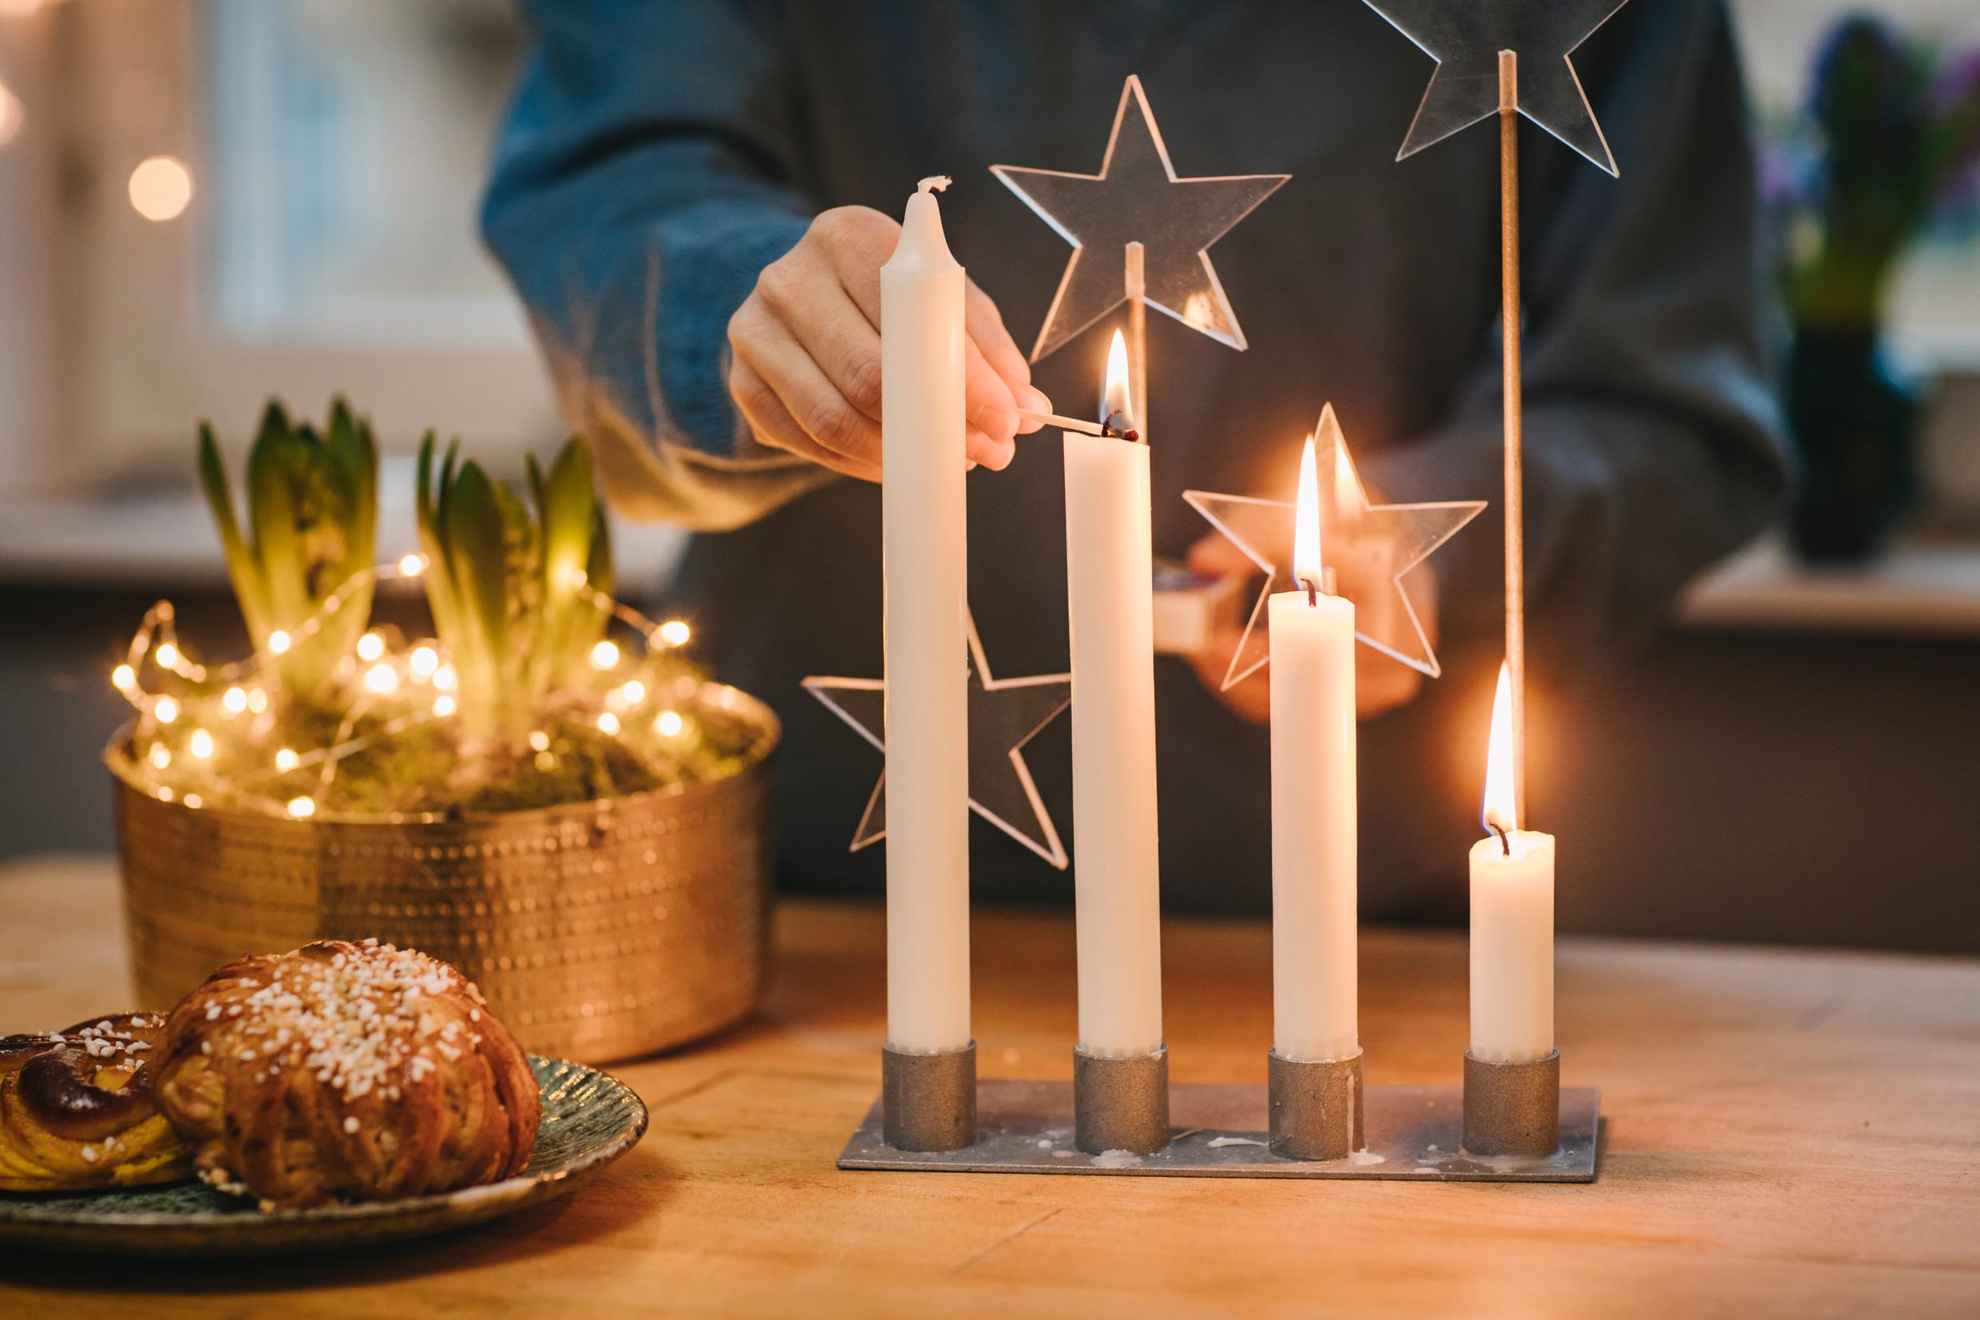 Persoon die kaarsen aansteekt voor advent voorafgaand aan kerst.